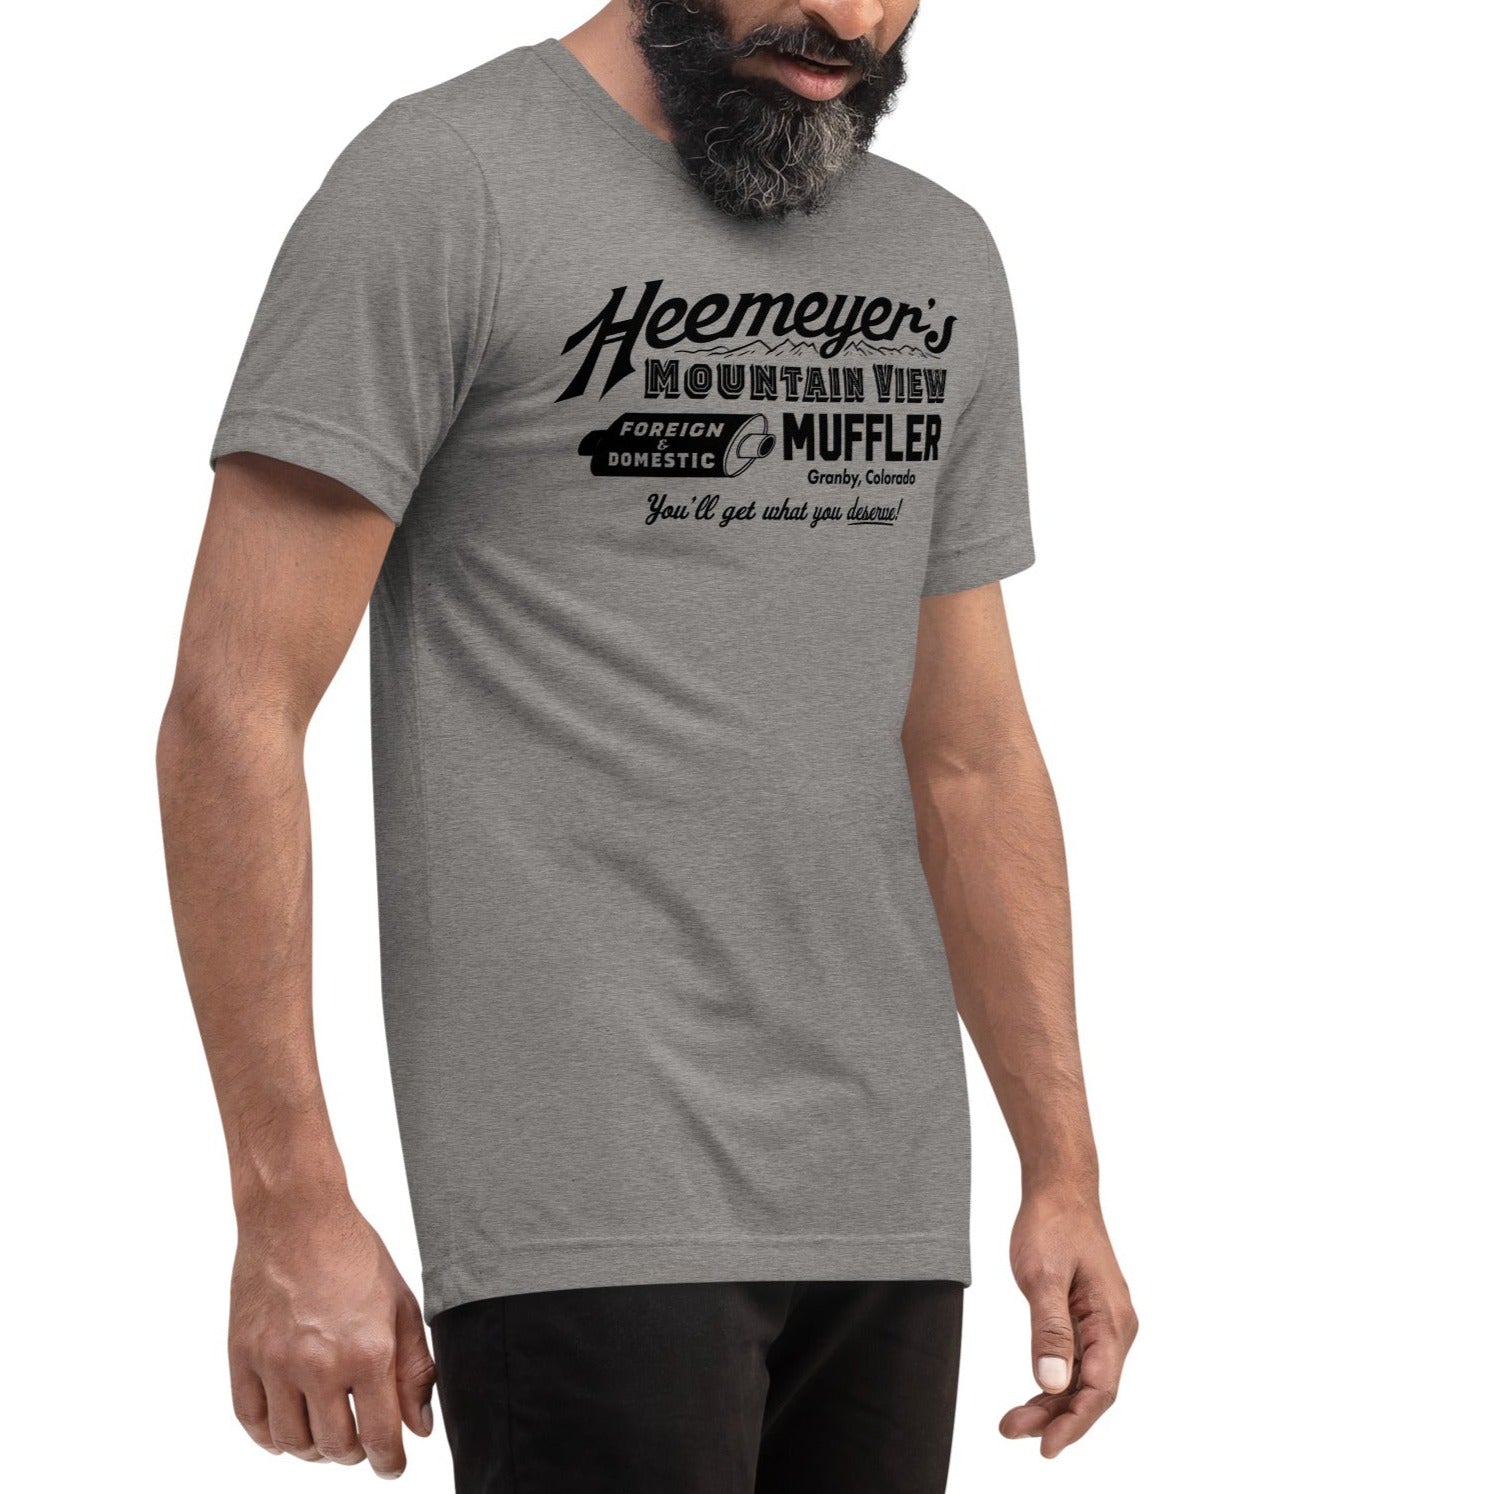 Heemeyer's Mountain View Muffler Tri-Blend T-Shirt